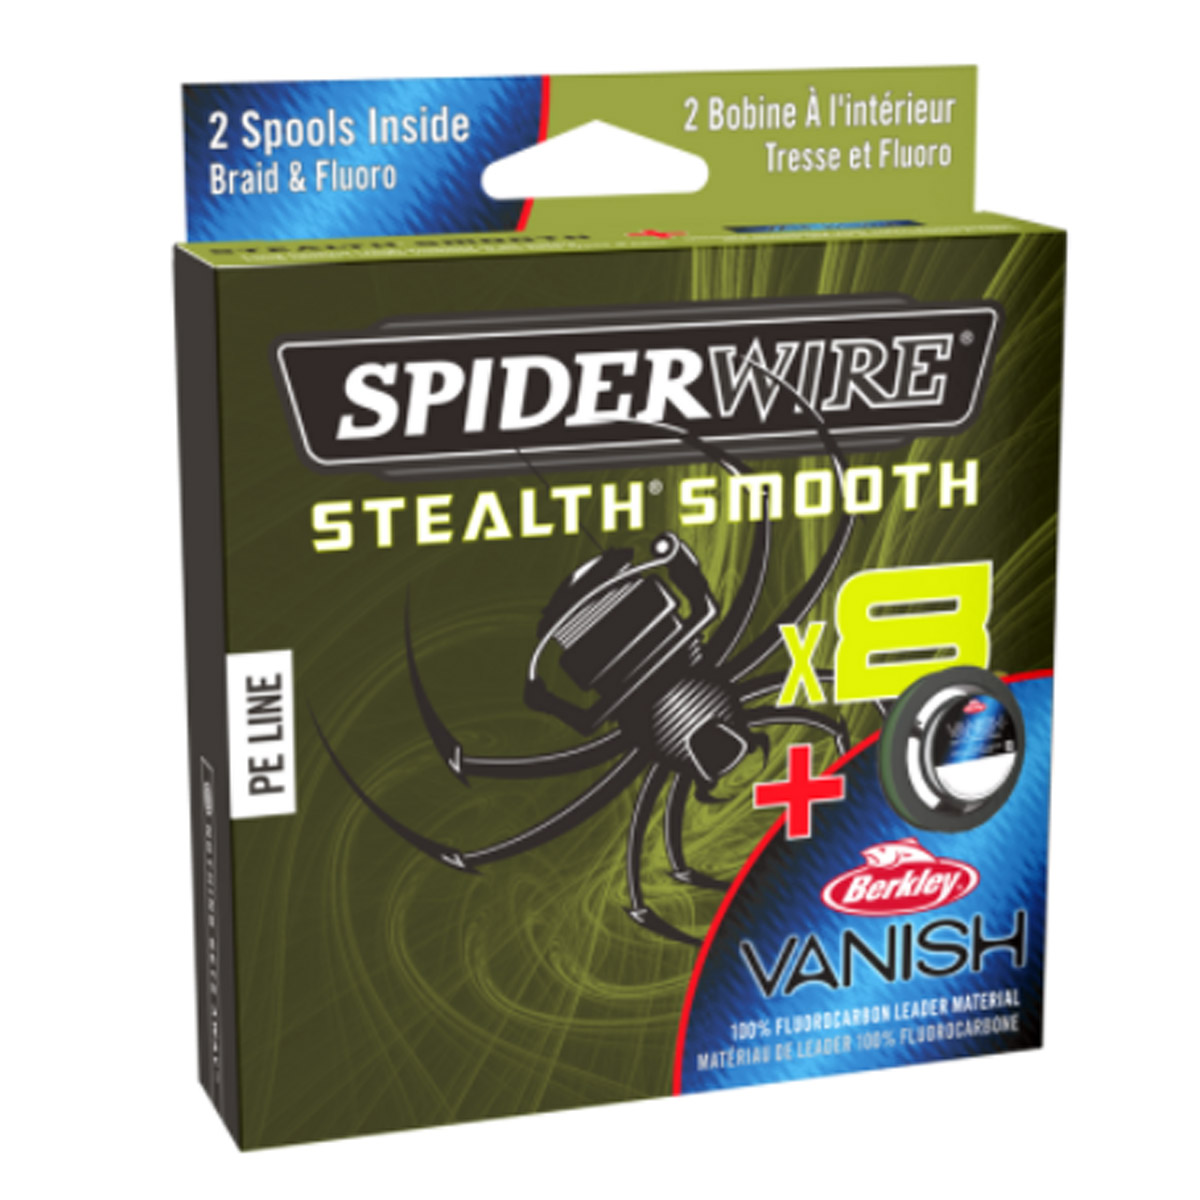 Spiderwire Stealth Smooth + Vanish Fluorocarbon